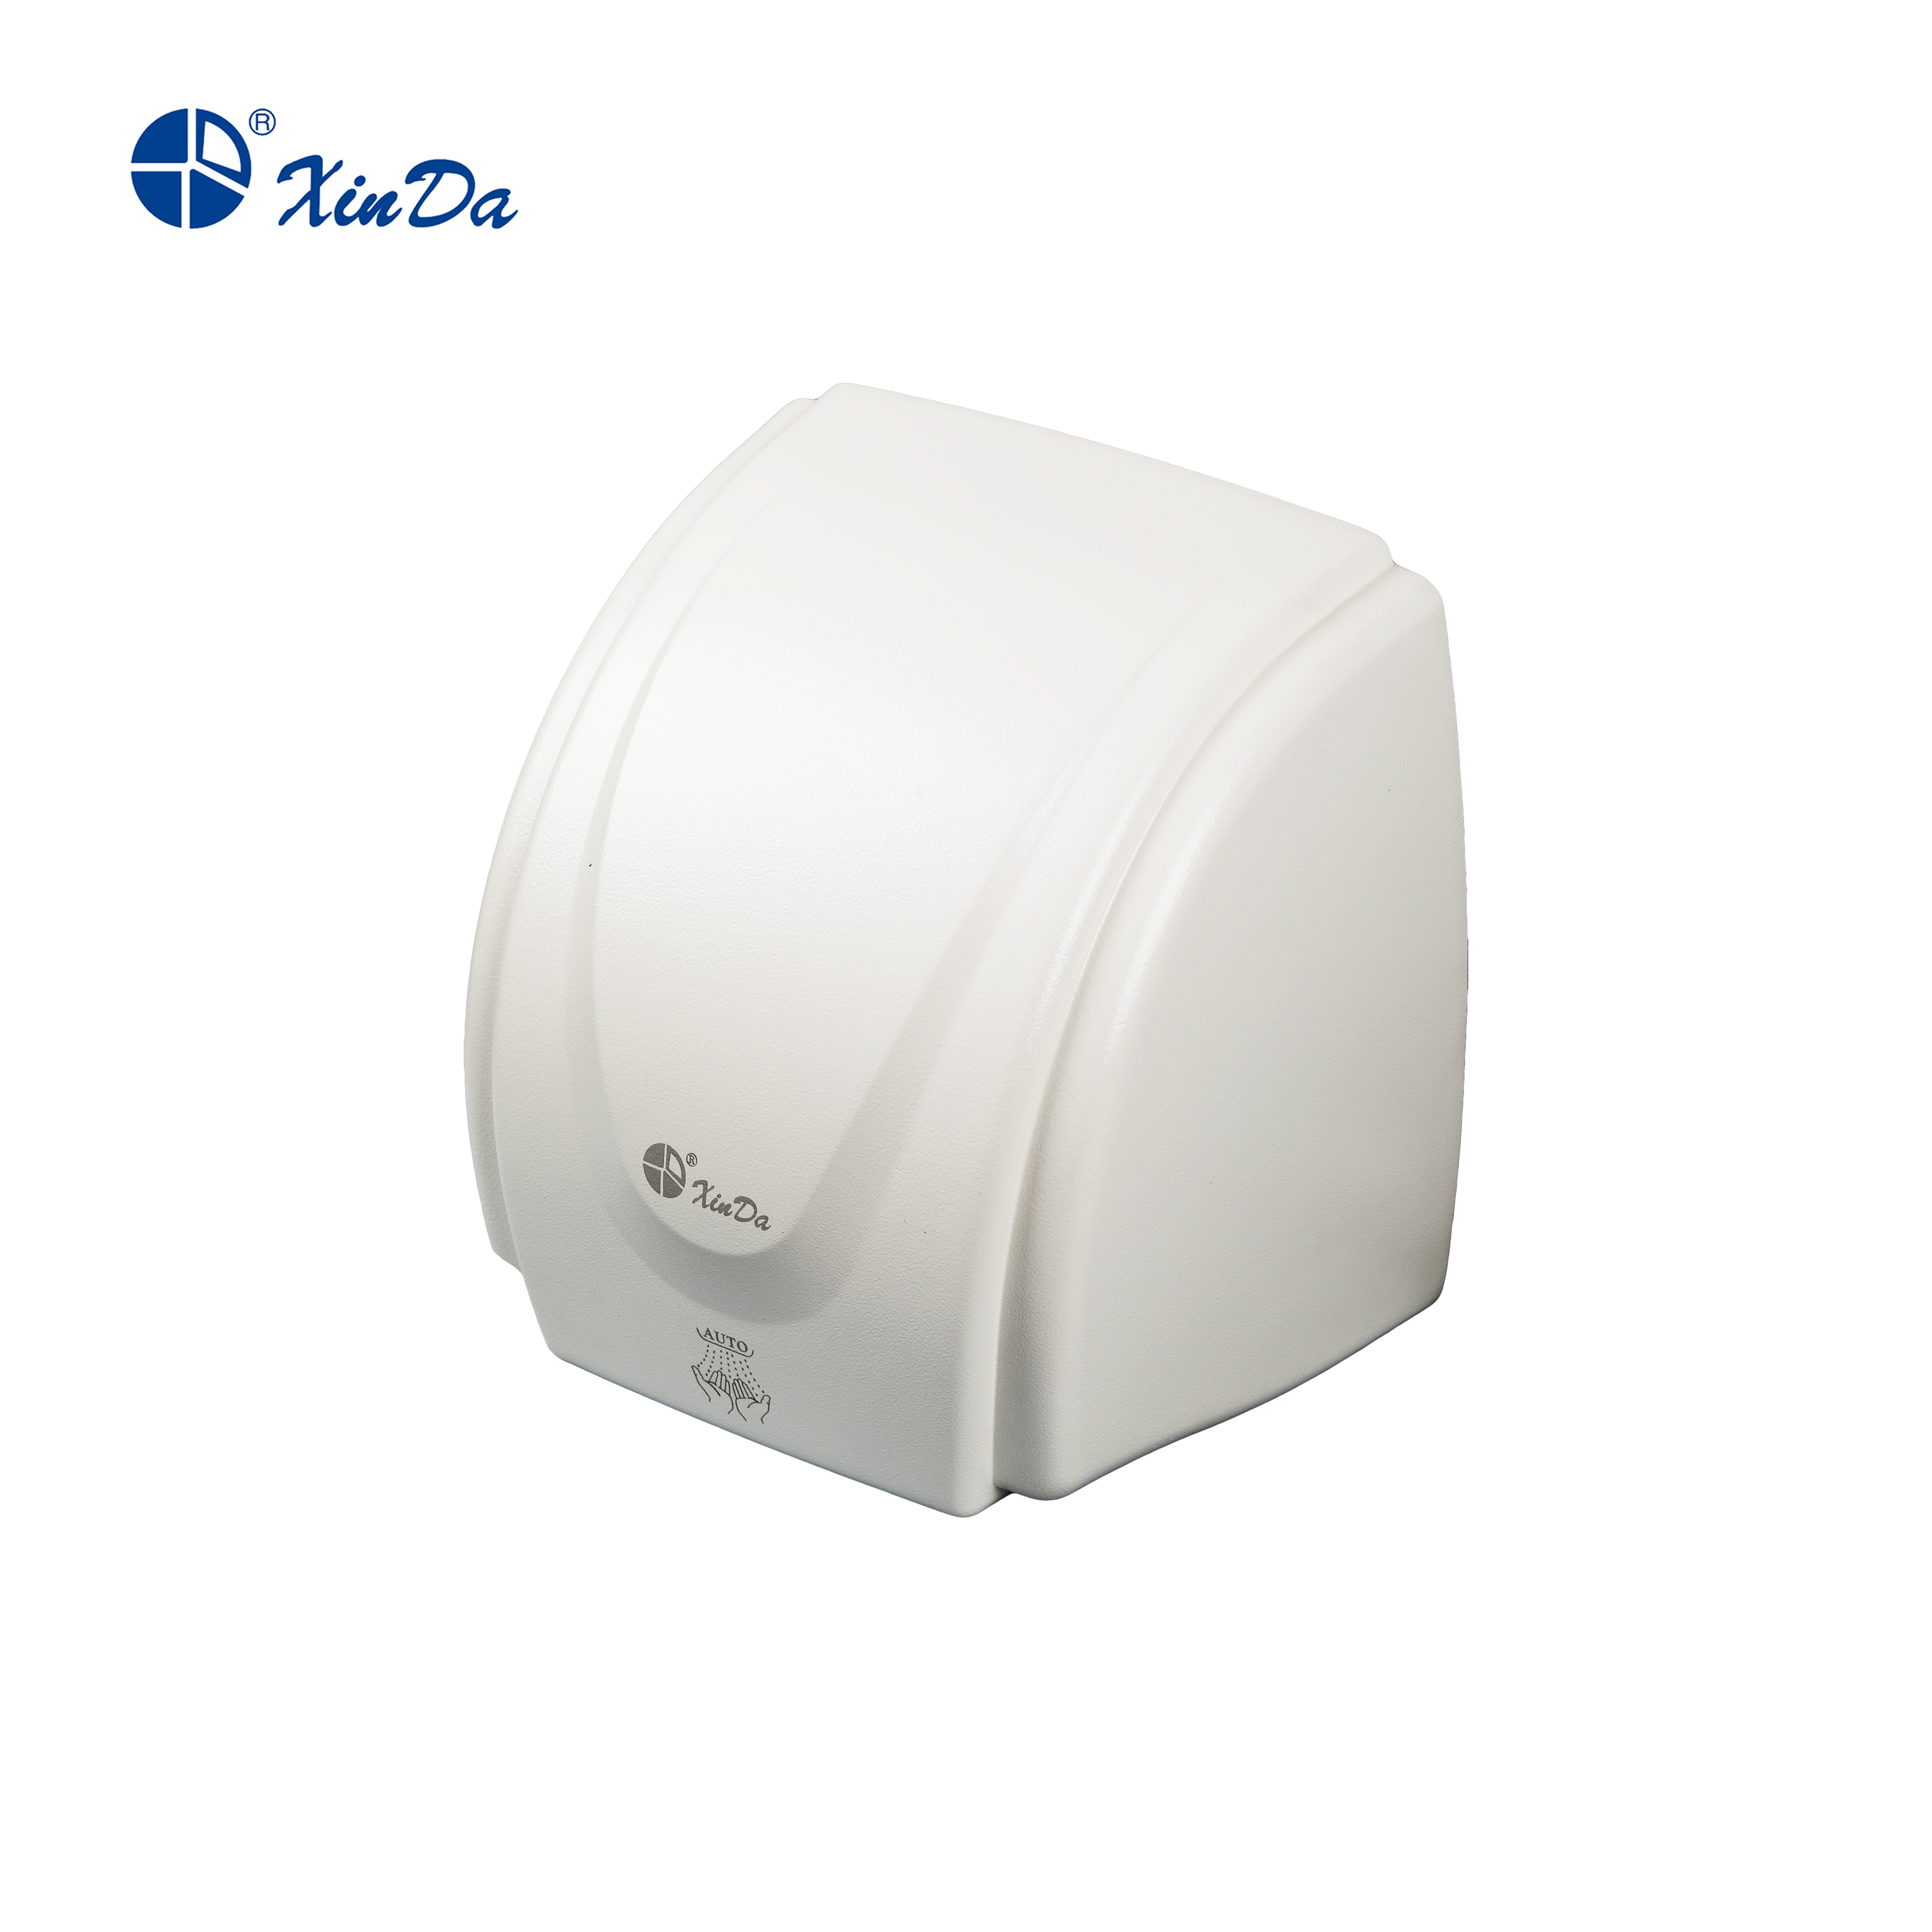 O XinDa GSX1800A Hotel sensor automático secador de mãos profissional automático corpo de plástico branco montado na parede